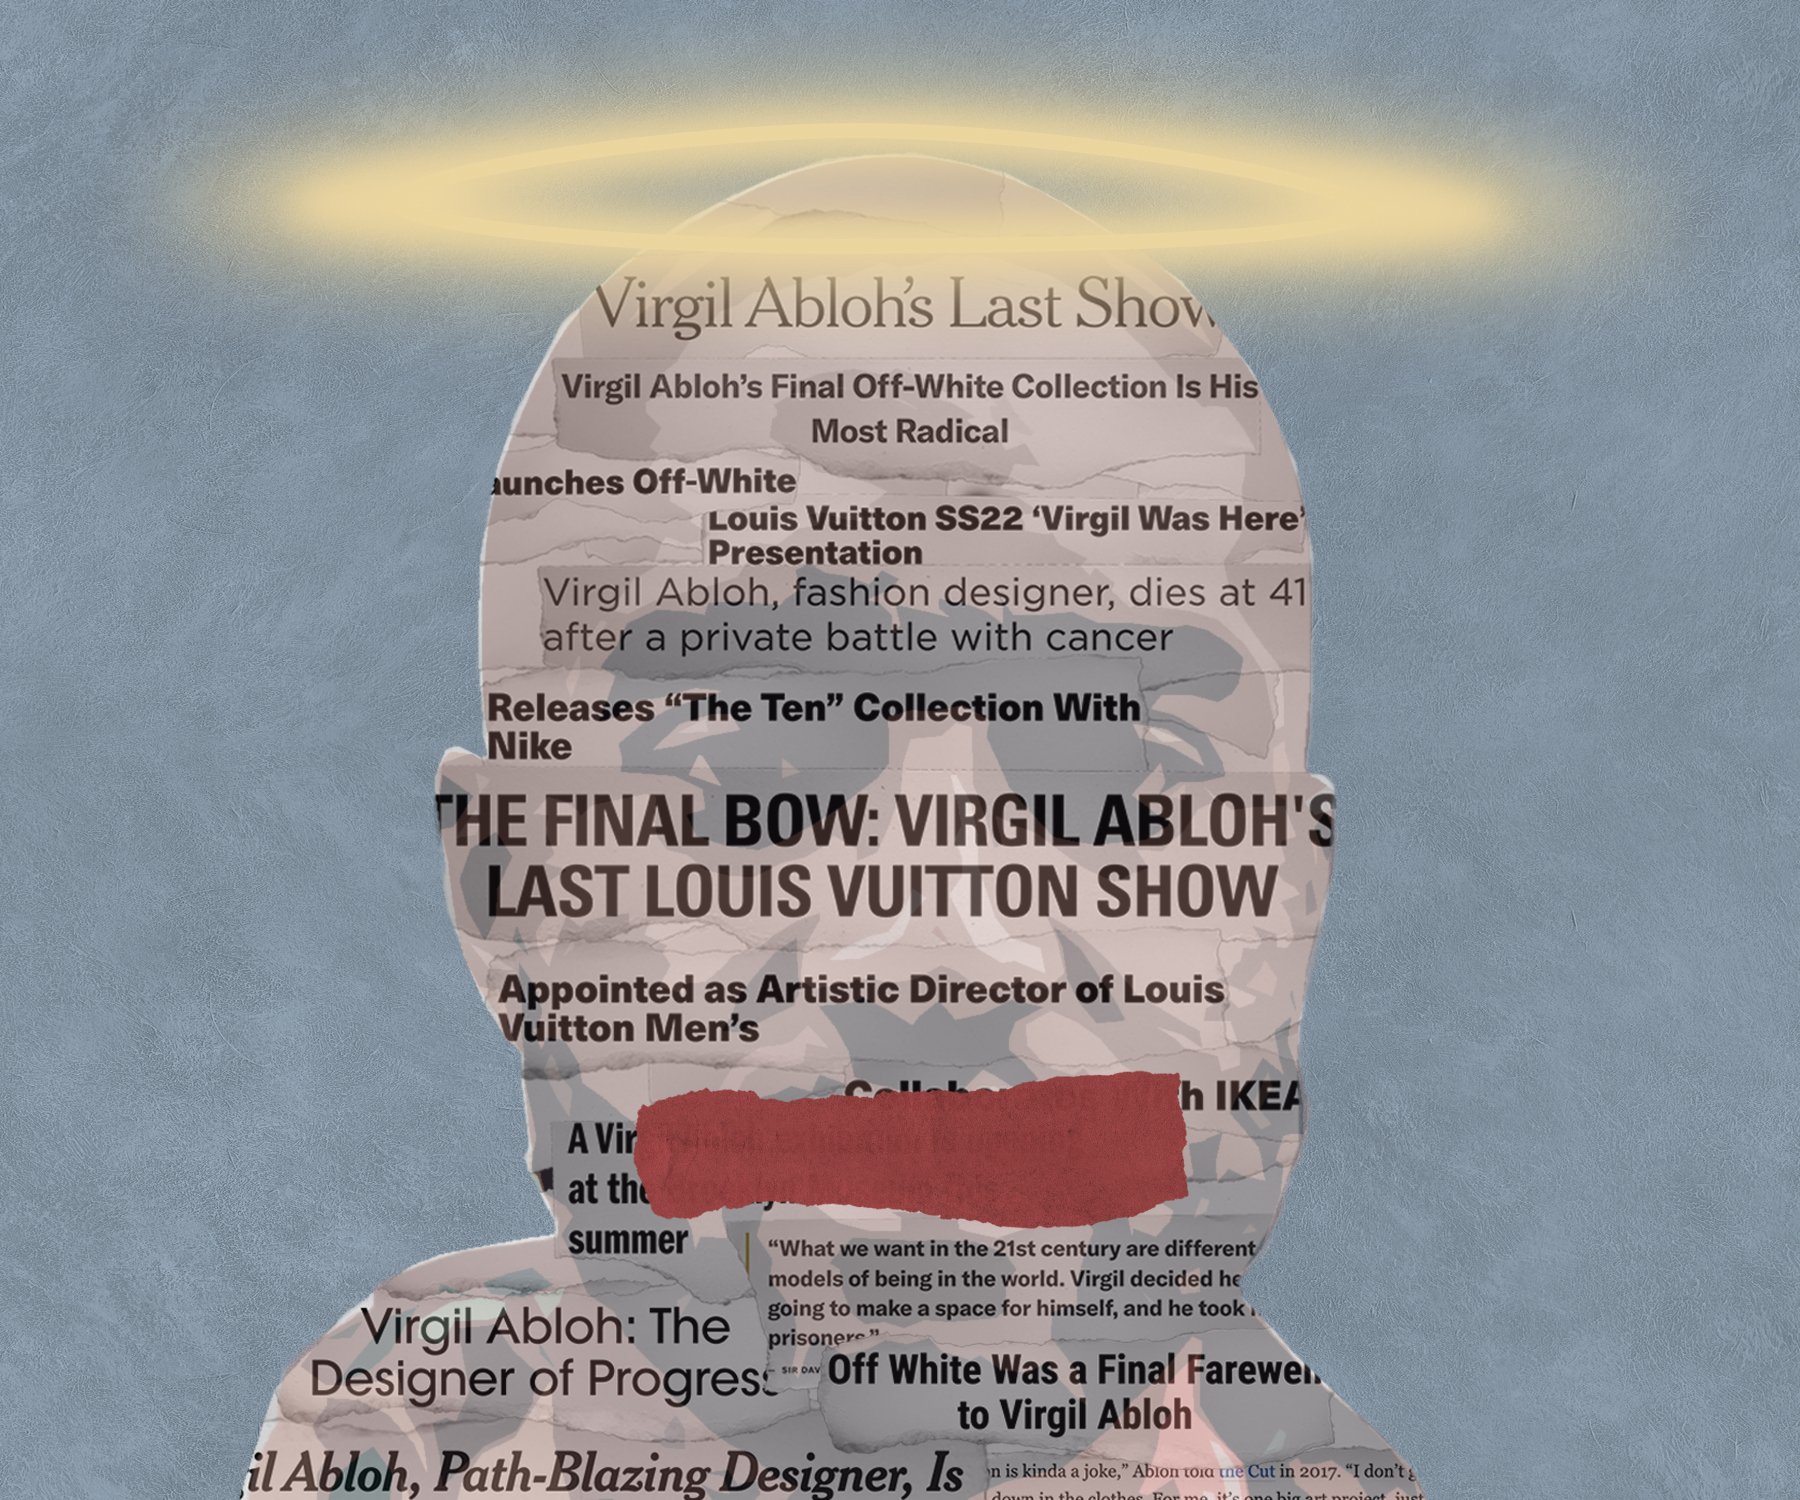 The posthumous release of Virgil Abloh's last Louis Vuitton